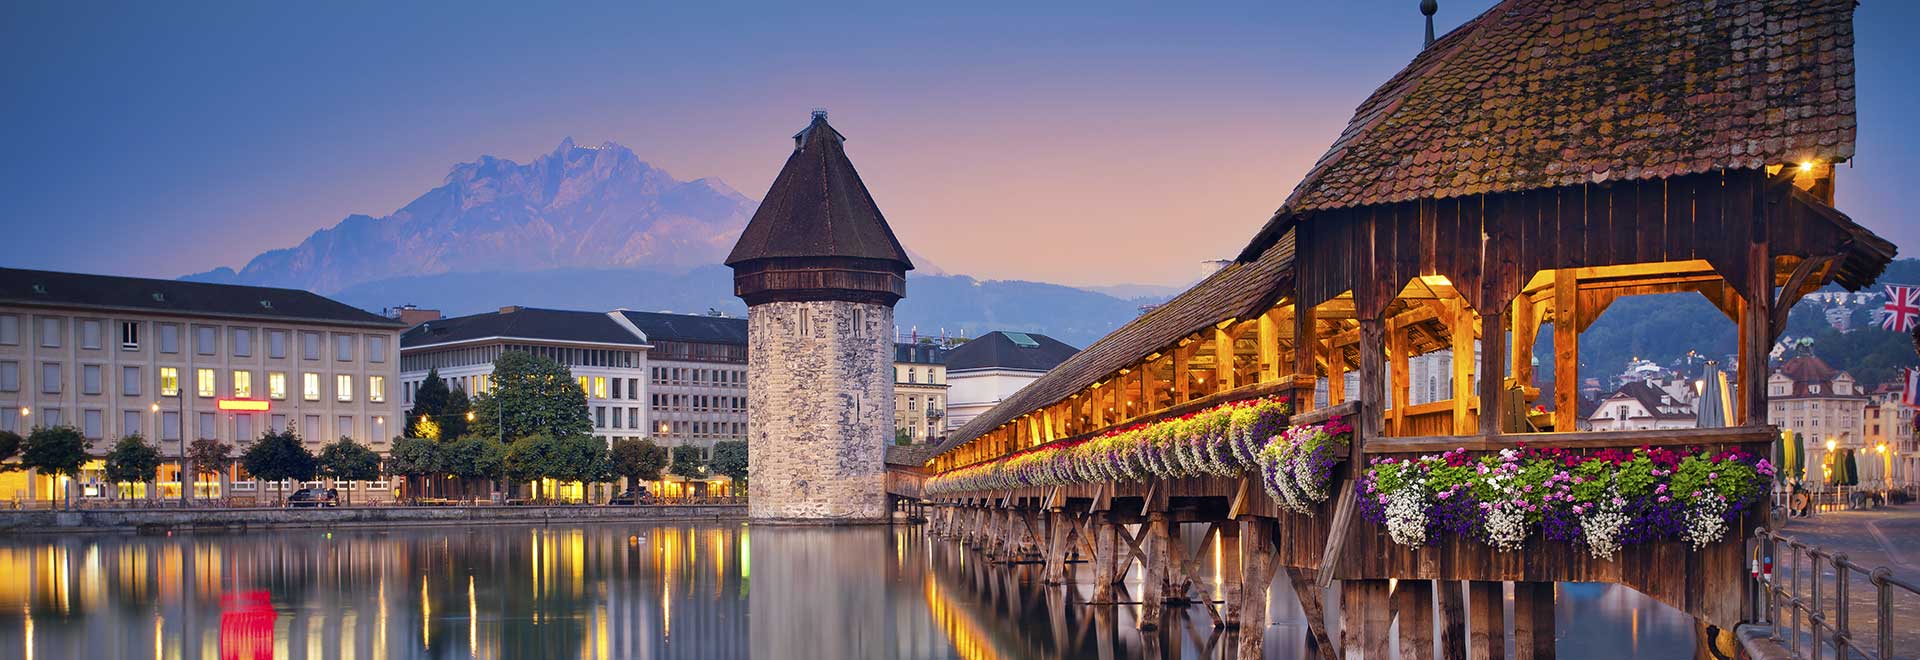 Europe Switzerland Lucerne